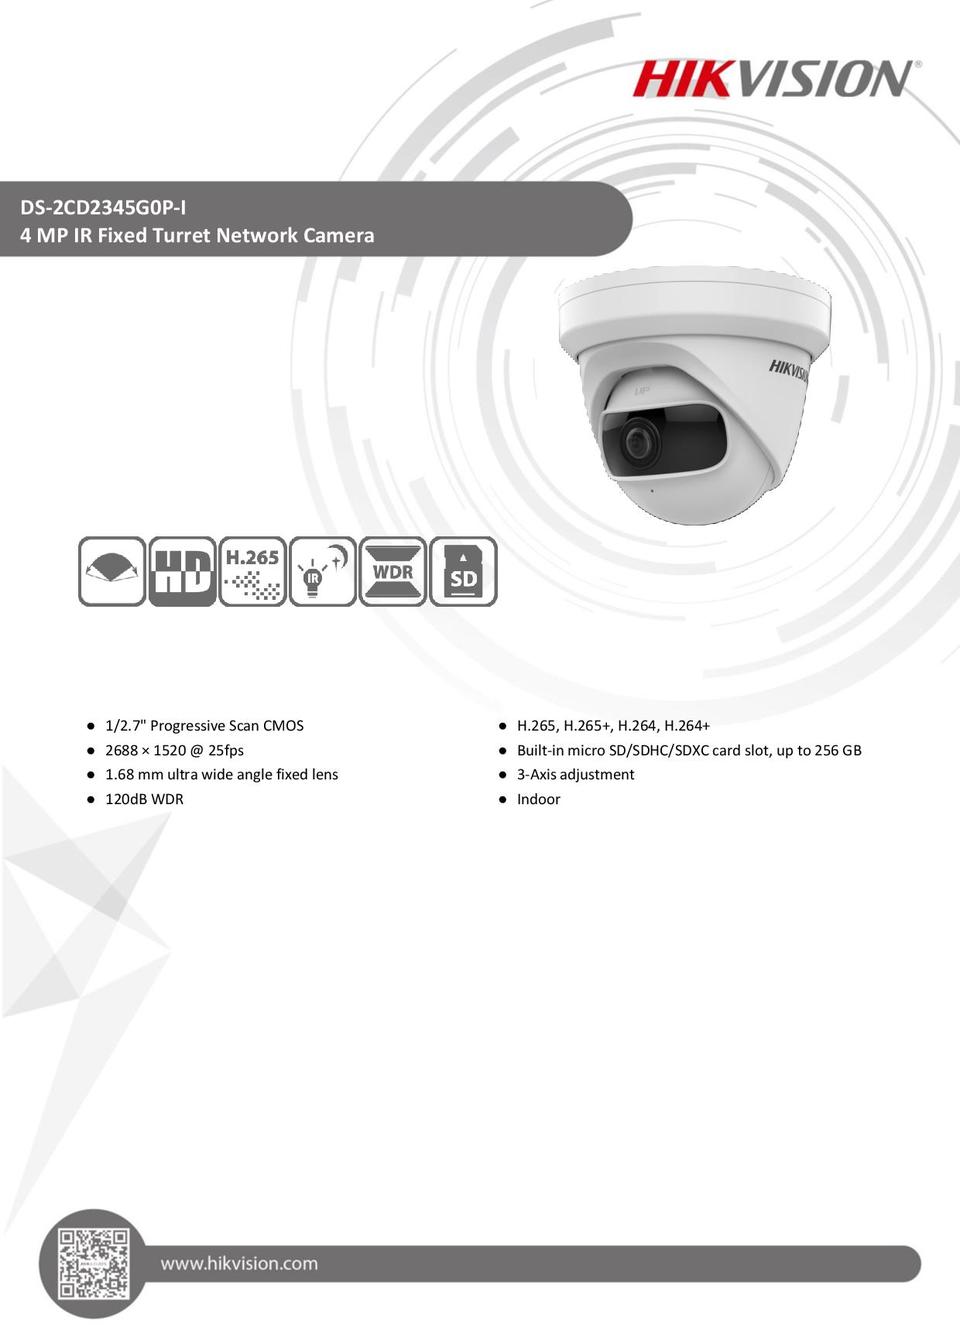 Hikvision DS-2CD2345G0P-I 4 Megapixel Super Wide Angle Turret Network Camera 0